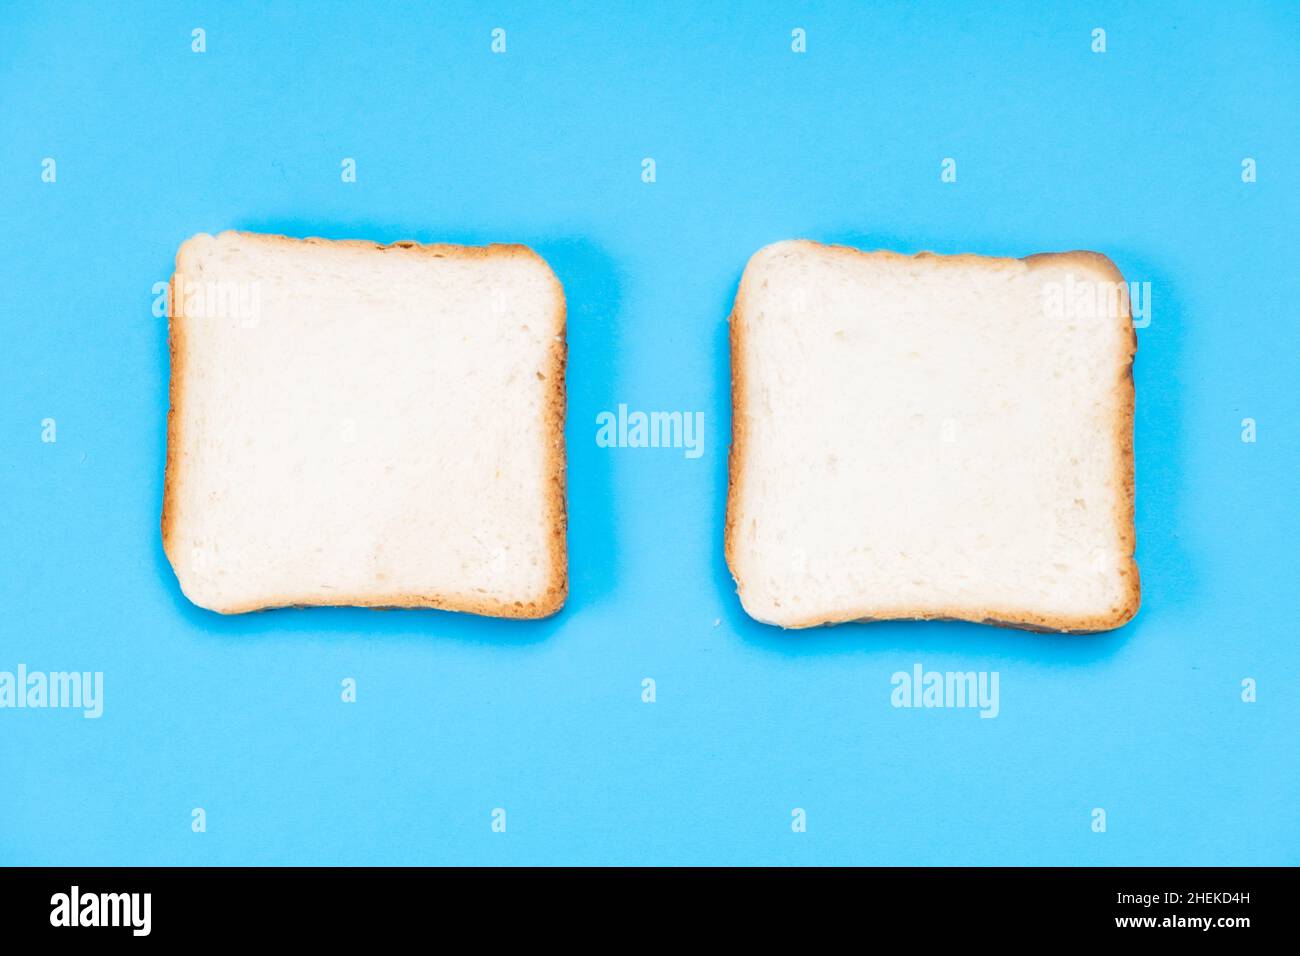 Zwei weiße Toaststücke auf blauem Hintergrund. Lebensmittelkonzept. Stockfoto